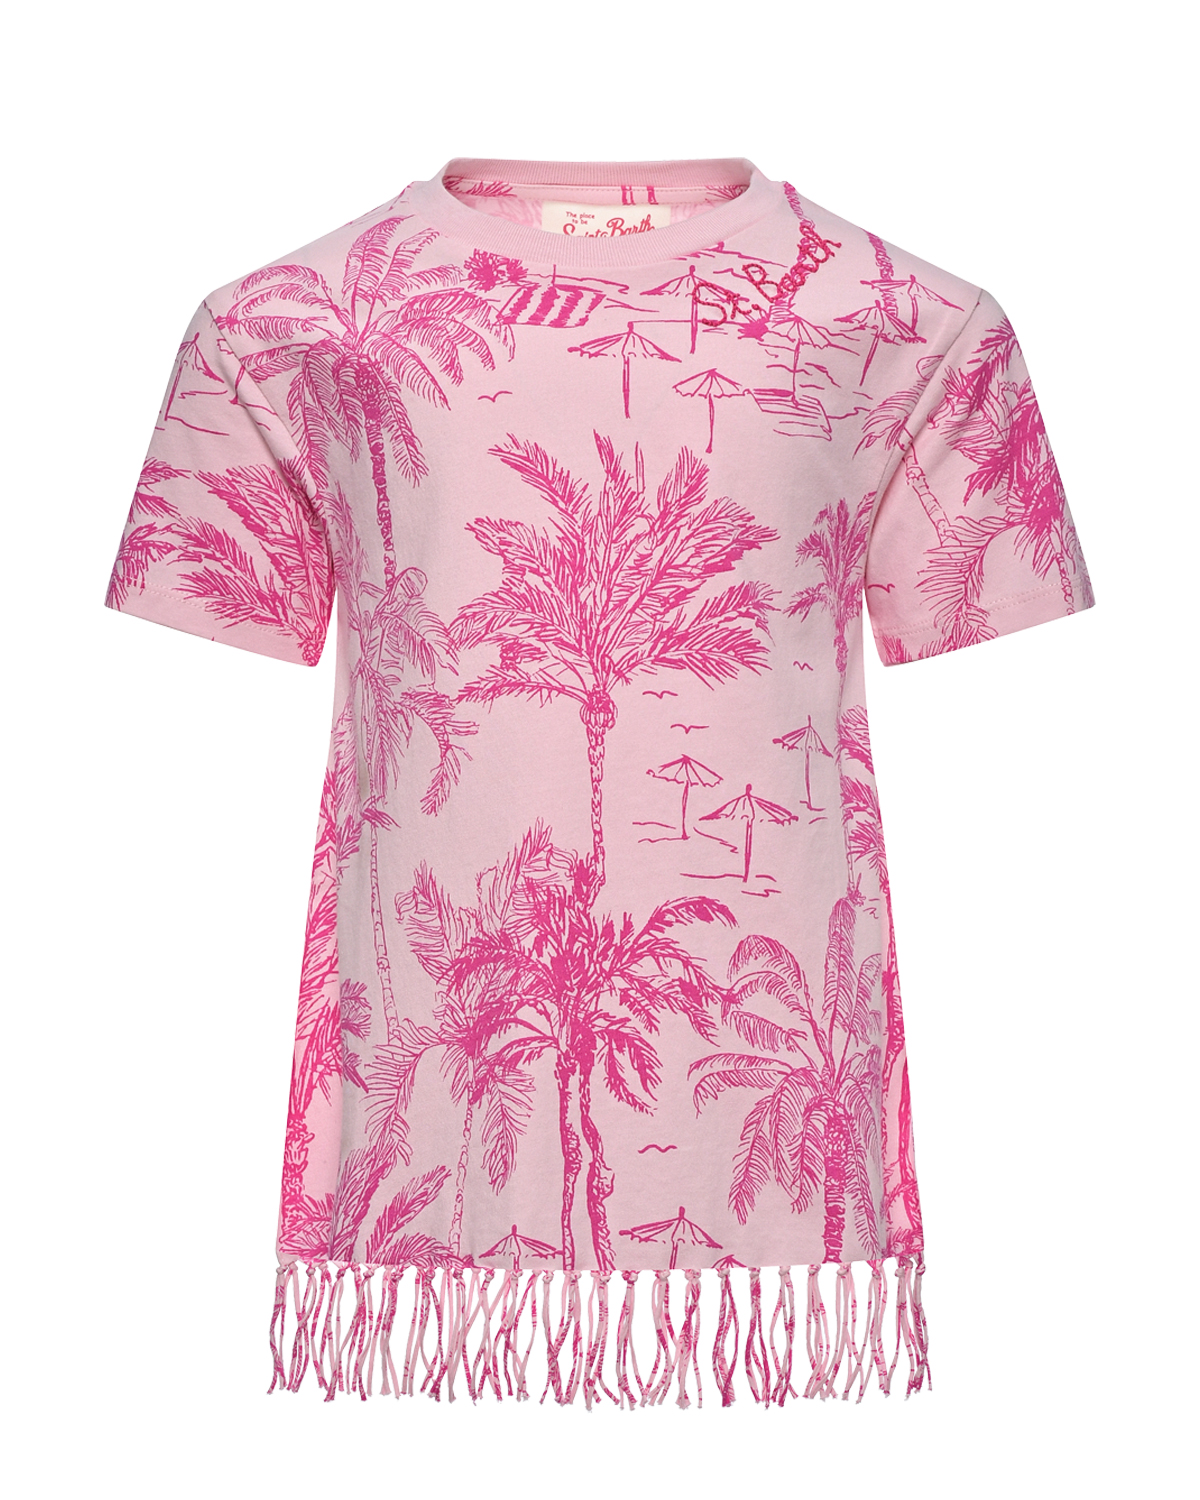 Платье - футболка с бахромой и принтом пальмы, розовое Saint Barth